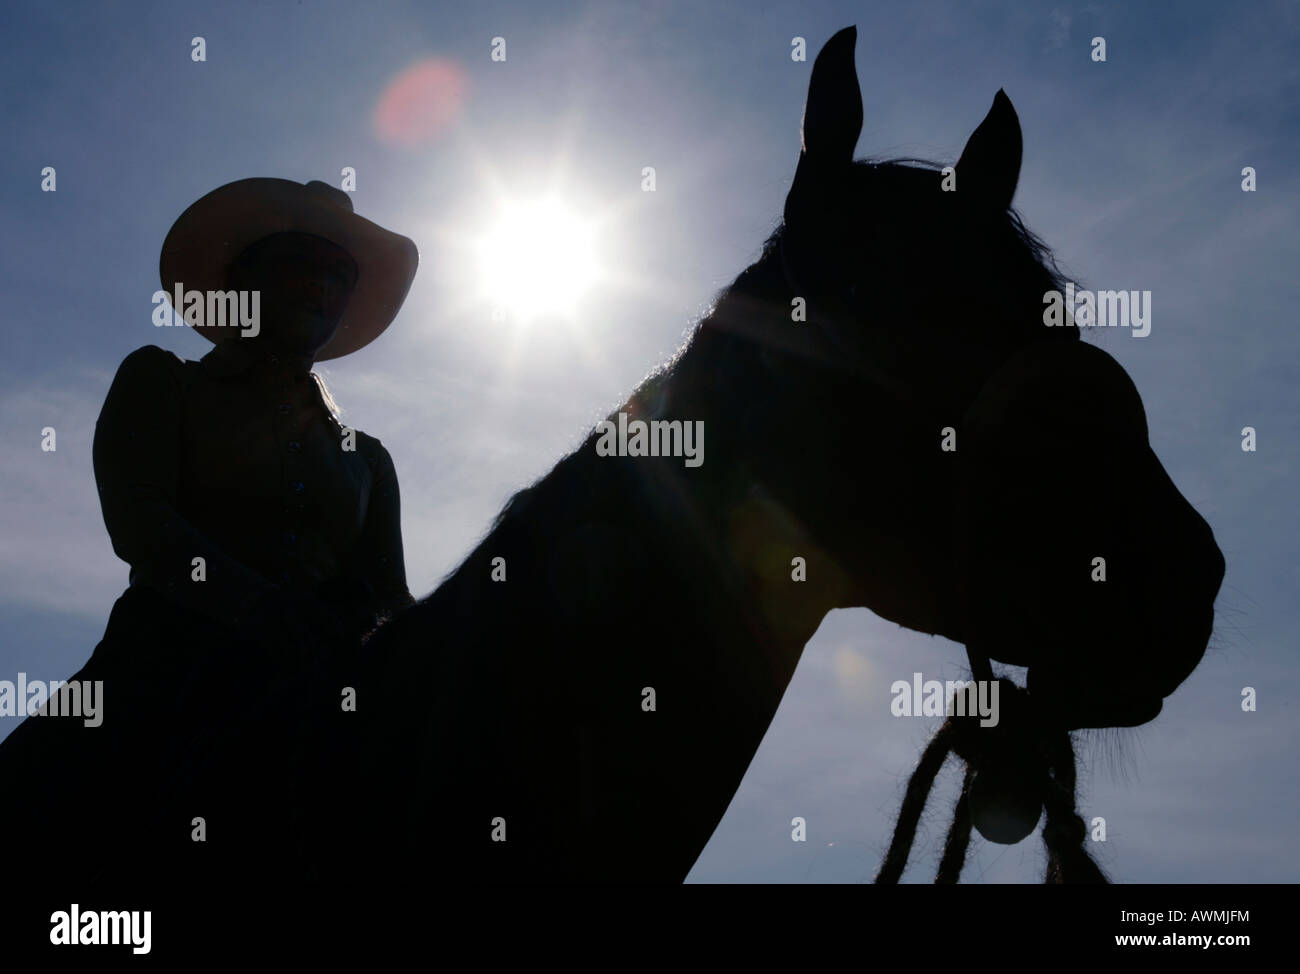 Silueta de un caballo con jinete con sombrero de cowboy delante del sol deslumbrante Foto de stock